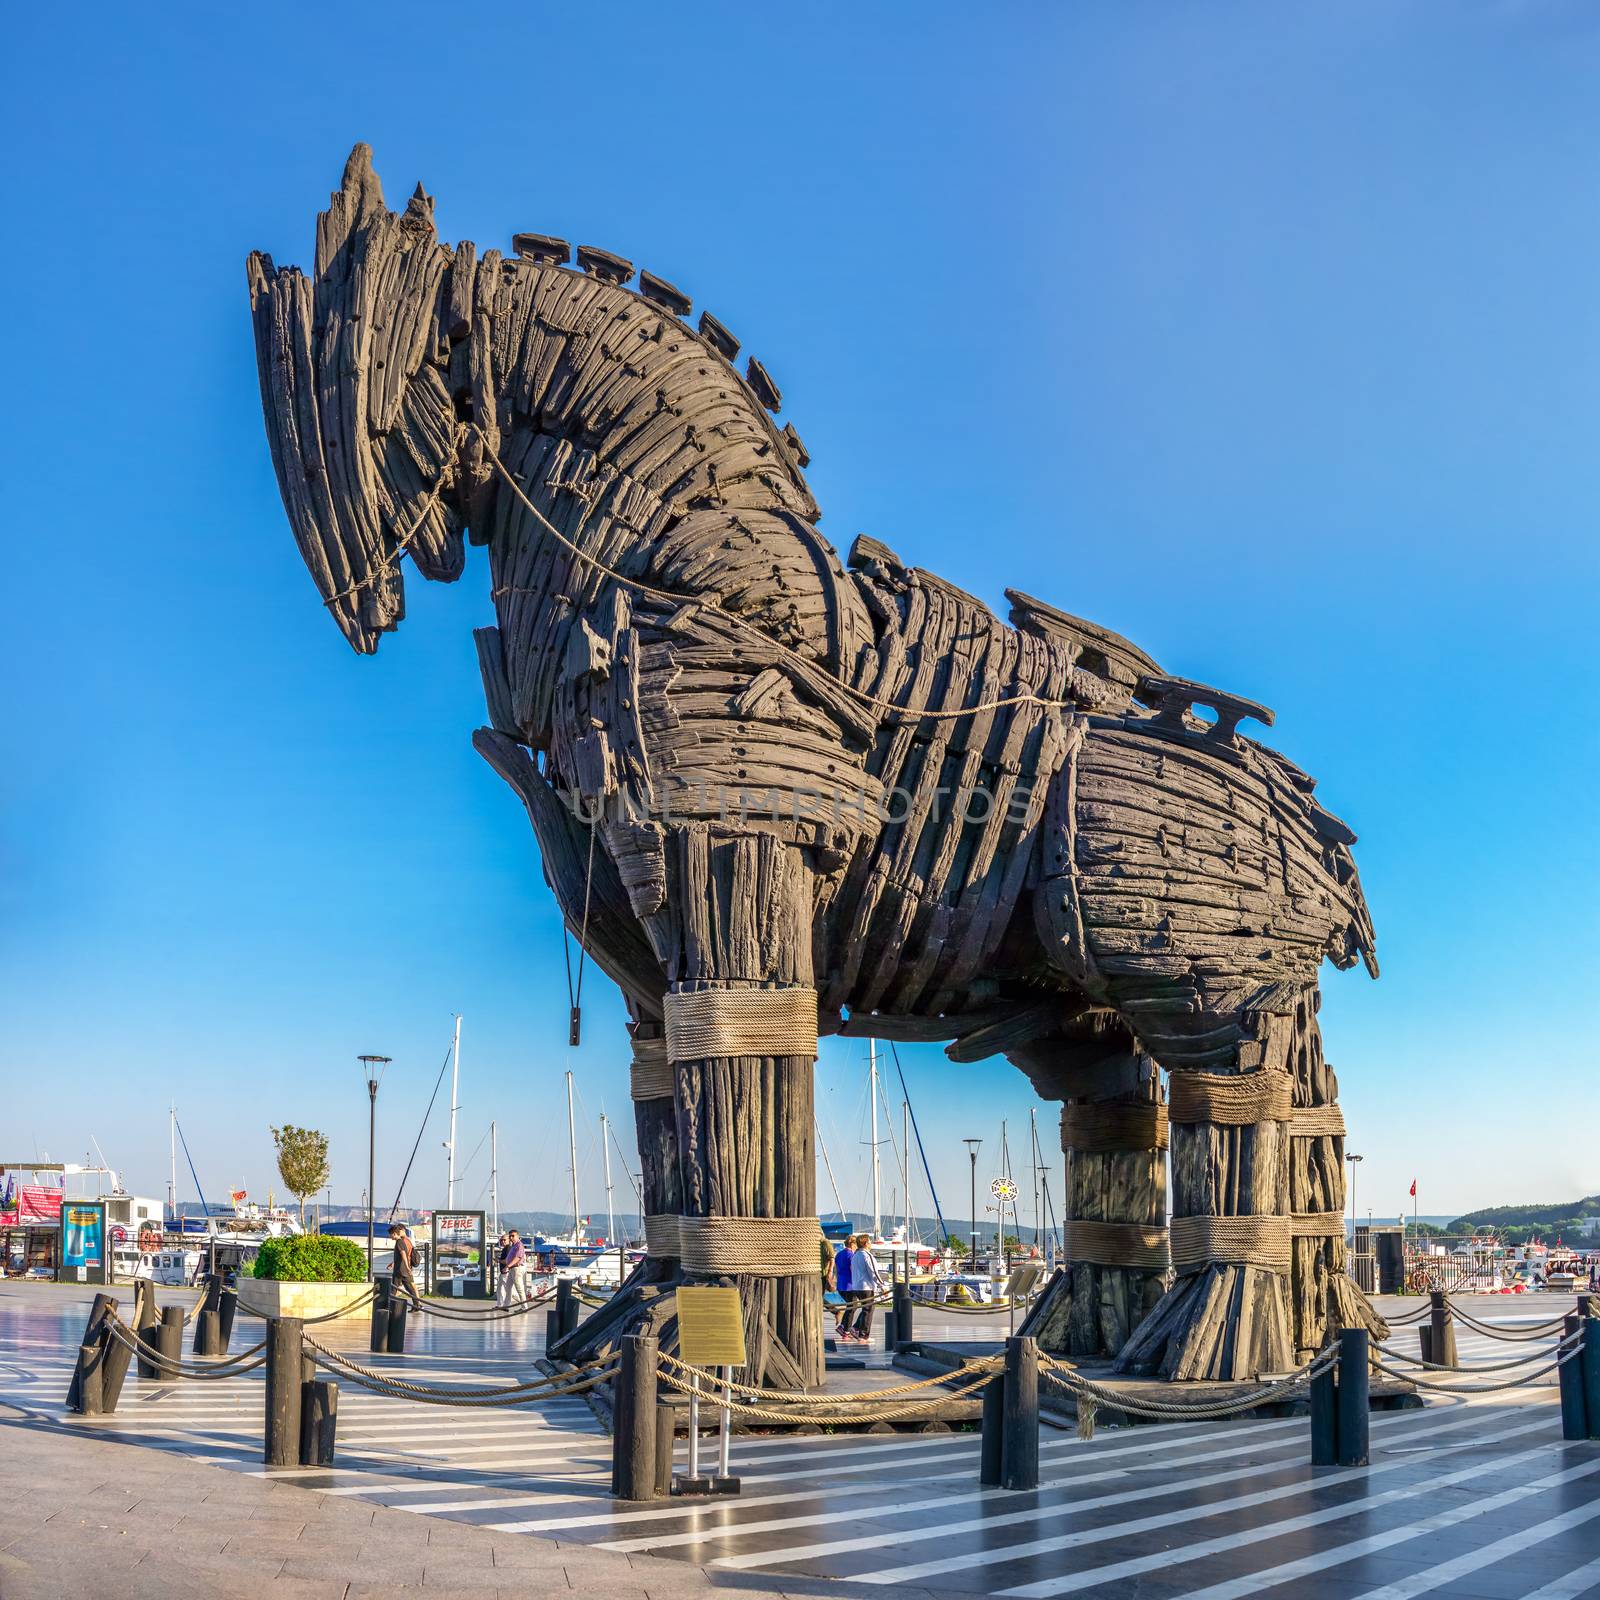 Trojan horse in Canakkale, Turkey by Multipedia